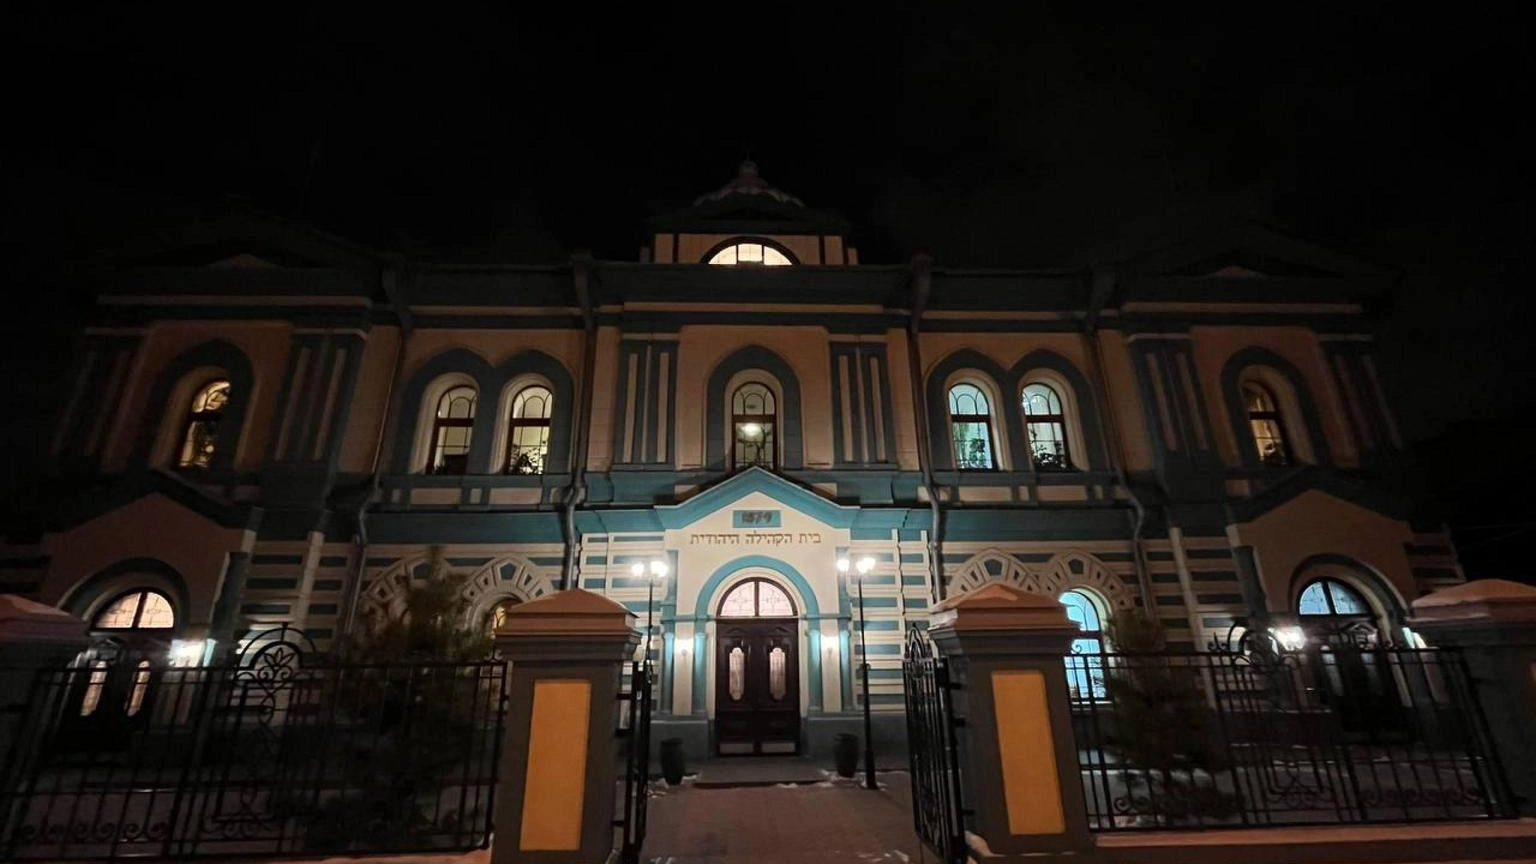 Luci accese in sinagoghe russe per ricordare Notte dei Cristalli